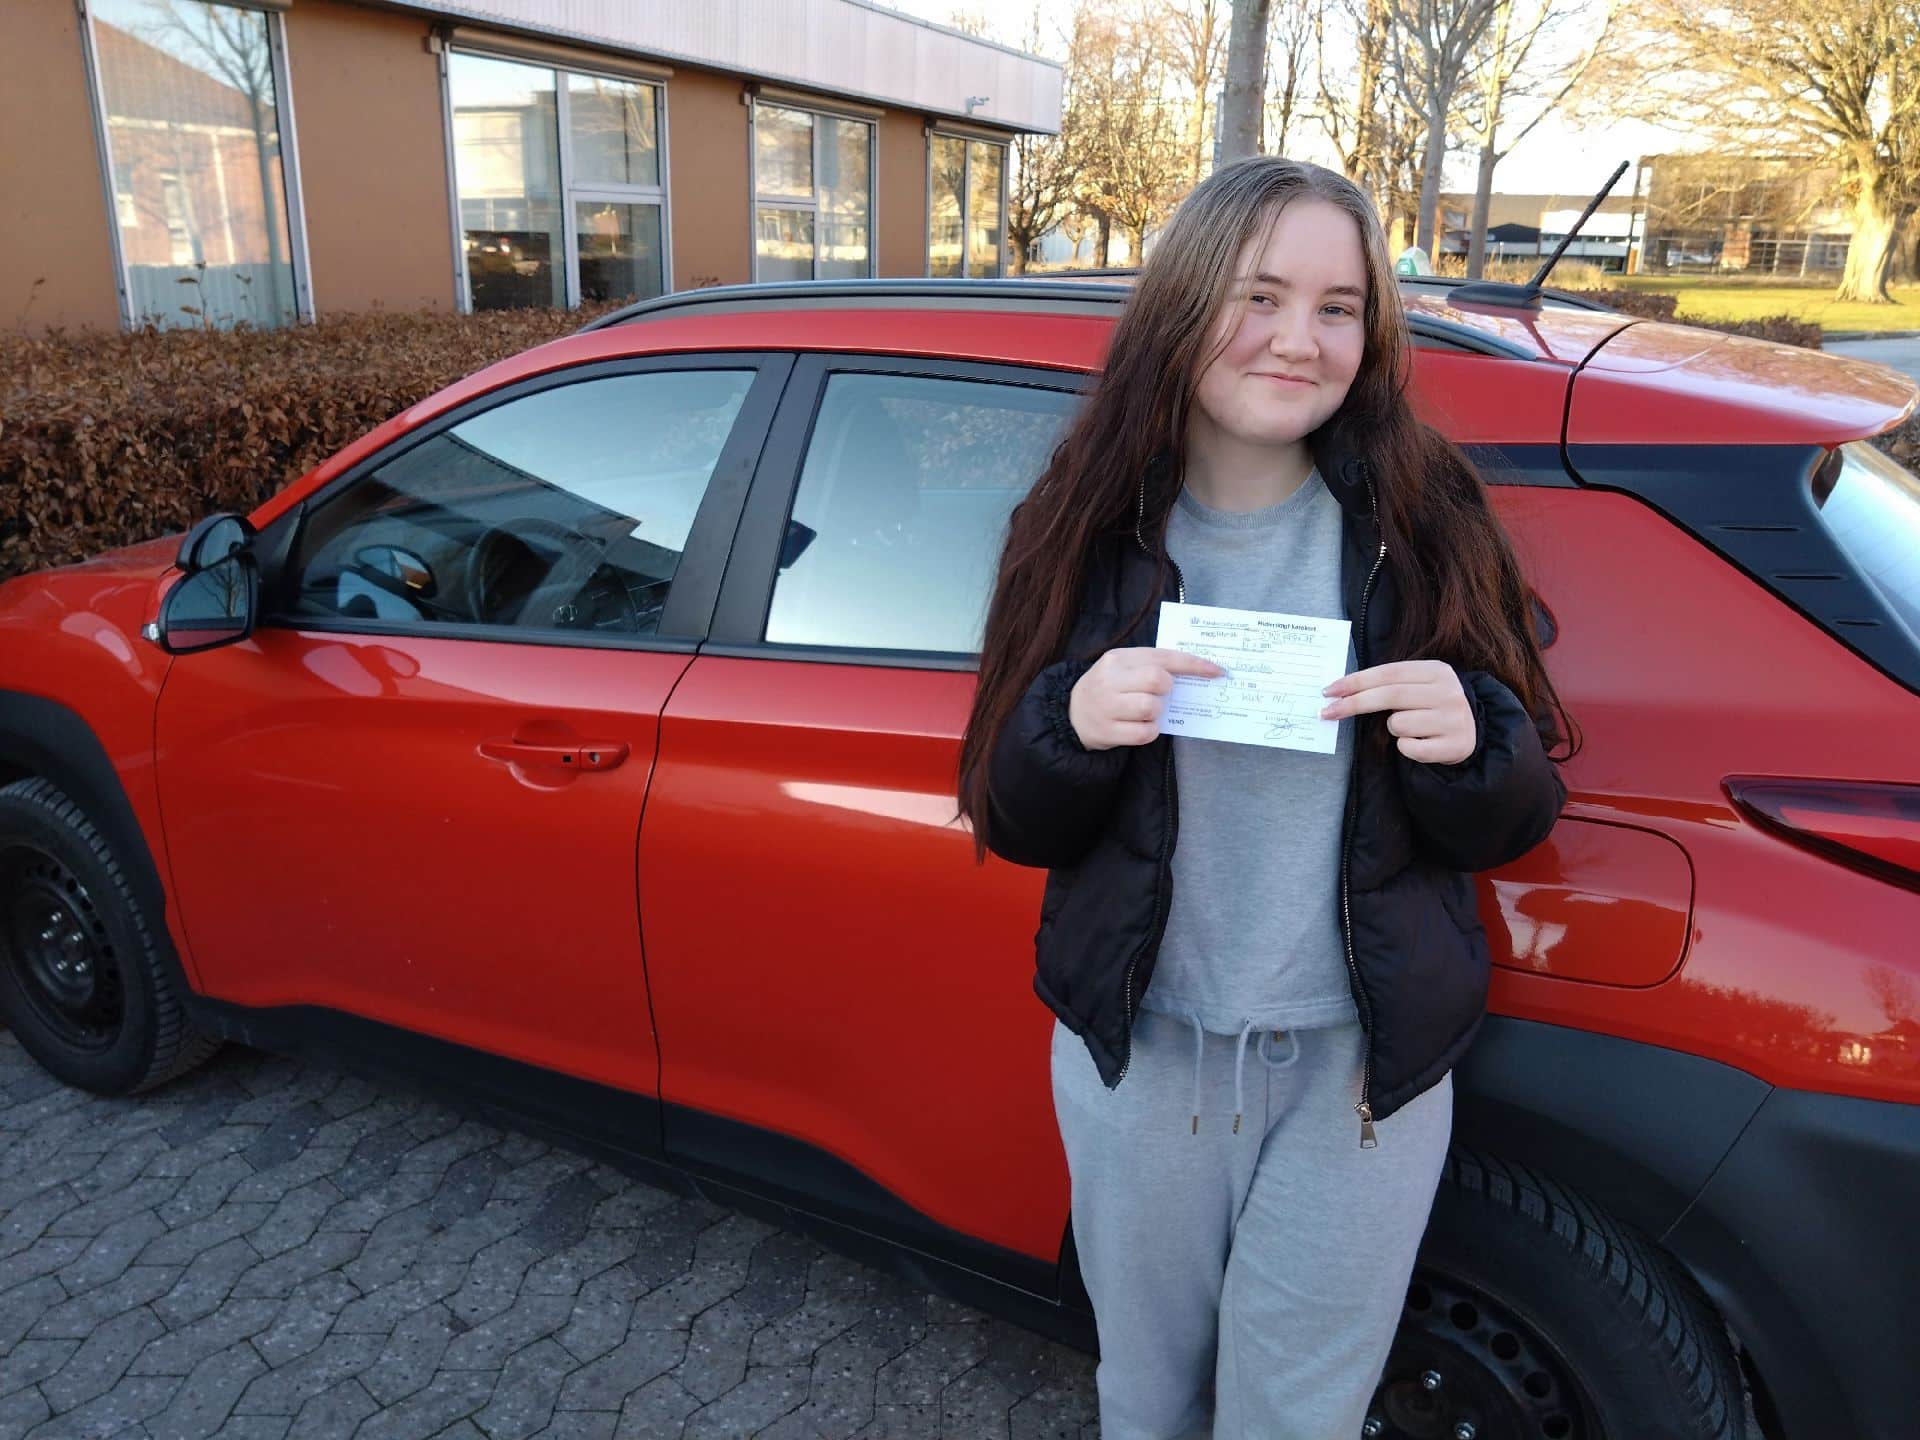 Så fik Fie Helene Enevoldsen Pedersen også et kørekort vi siger tillykke med kørekortet 🎉🎊🎉